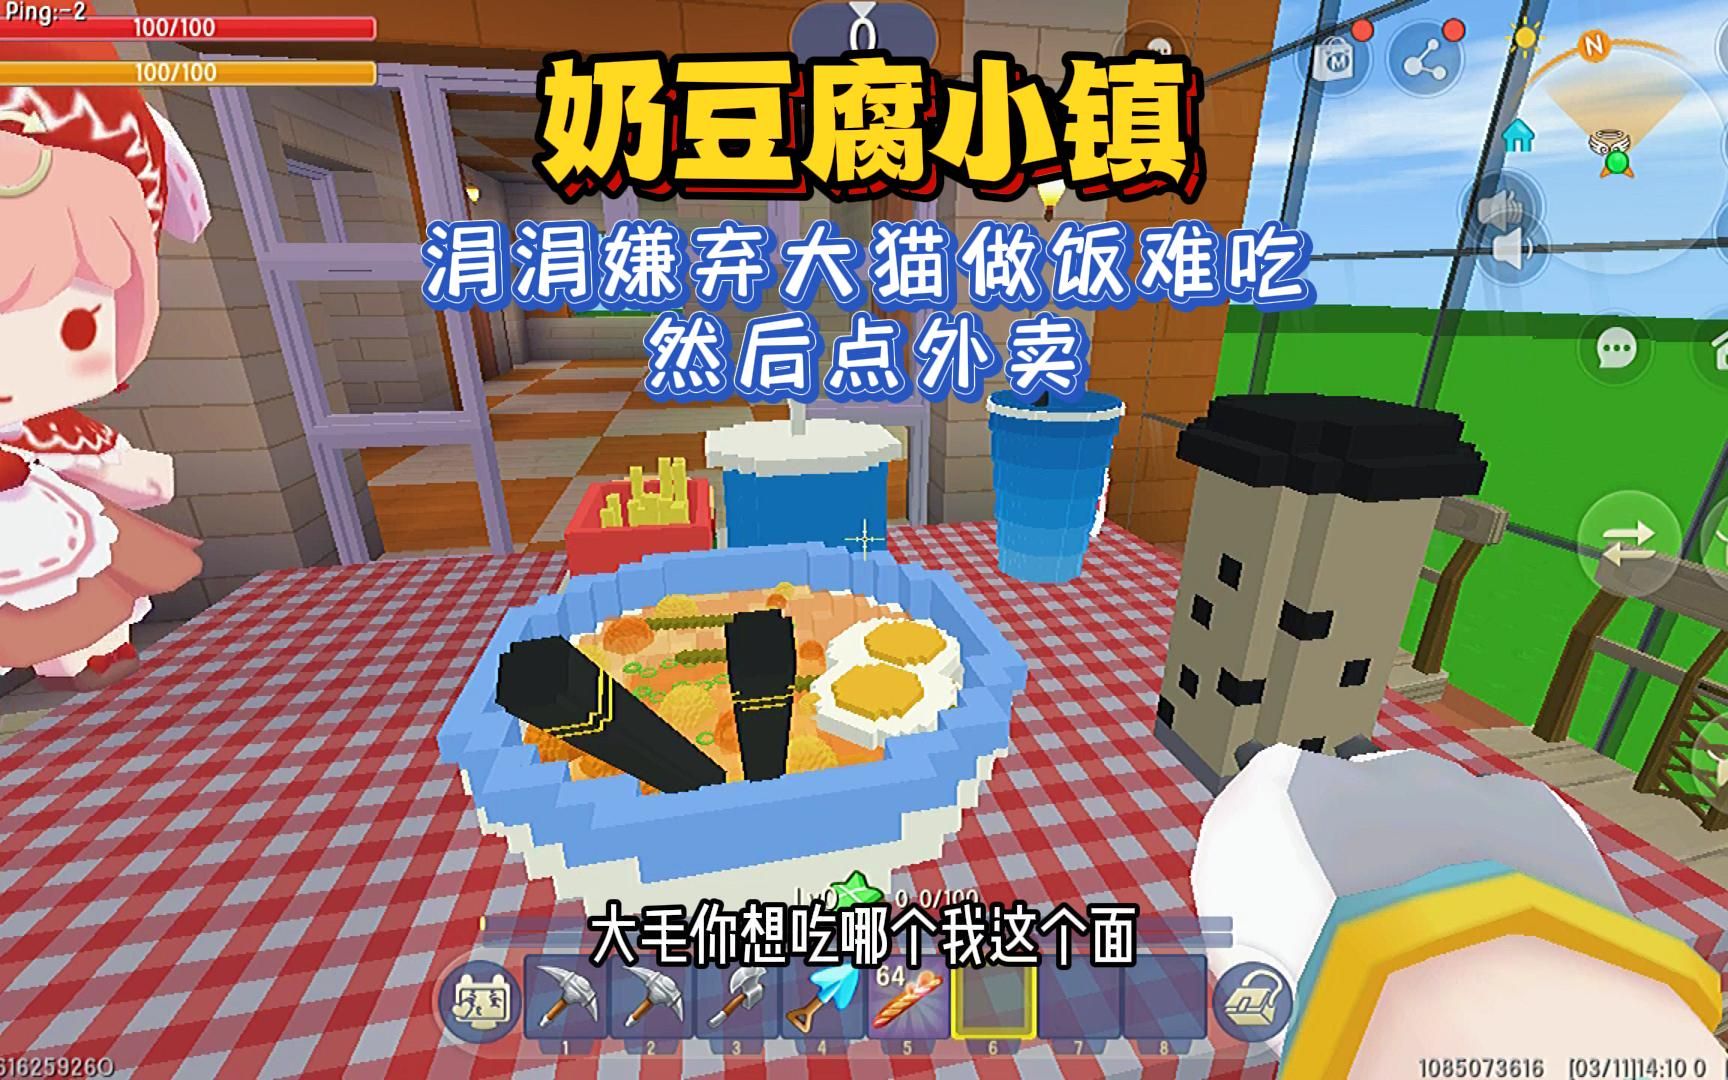 迷你世界：奶豆腐小镇 涓涓嫌弃大猫做饭难吃 要点外卖